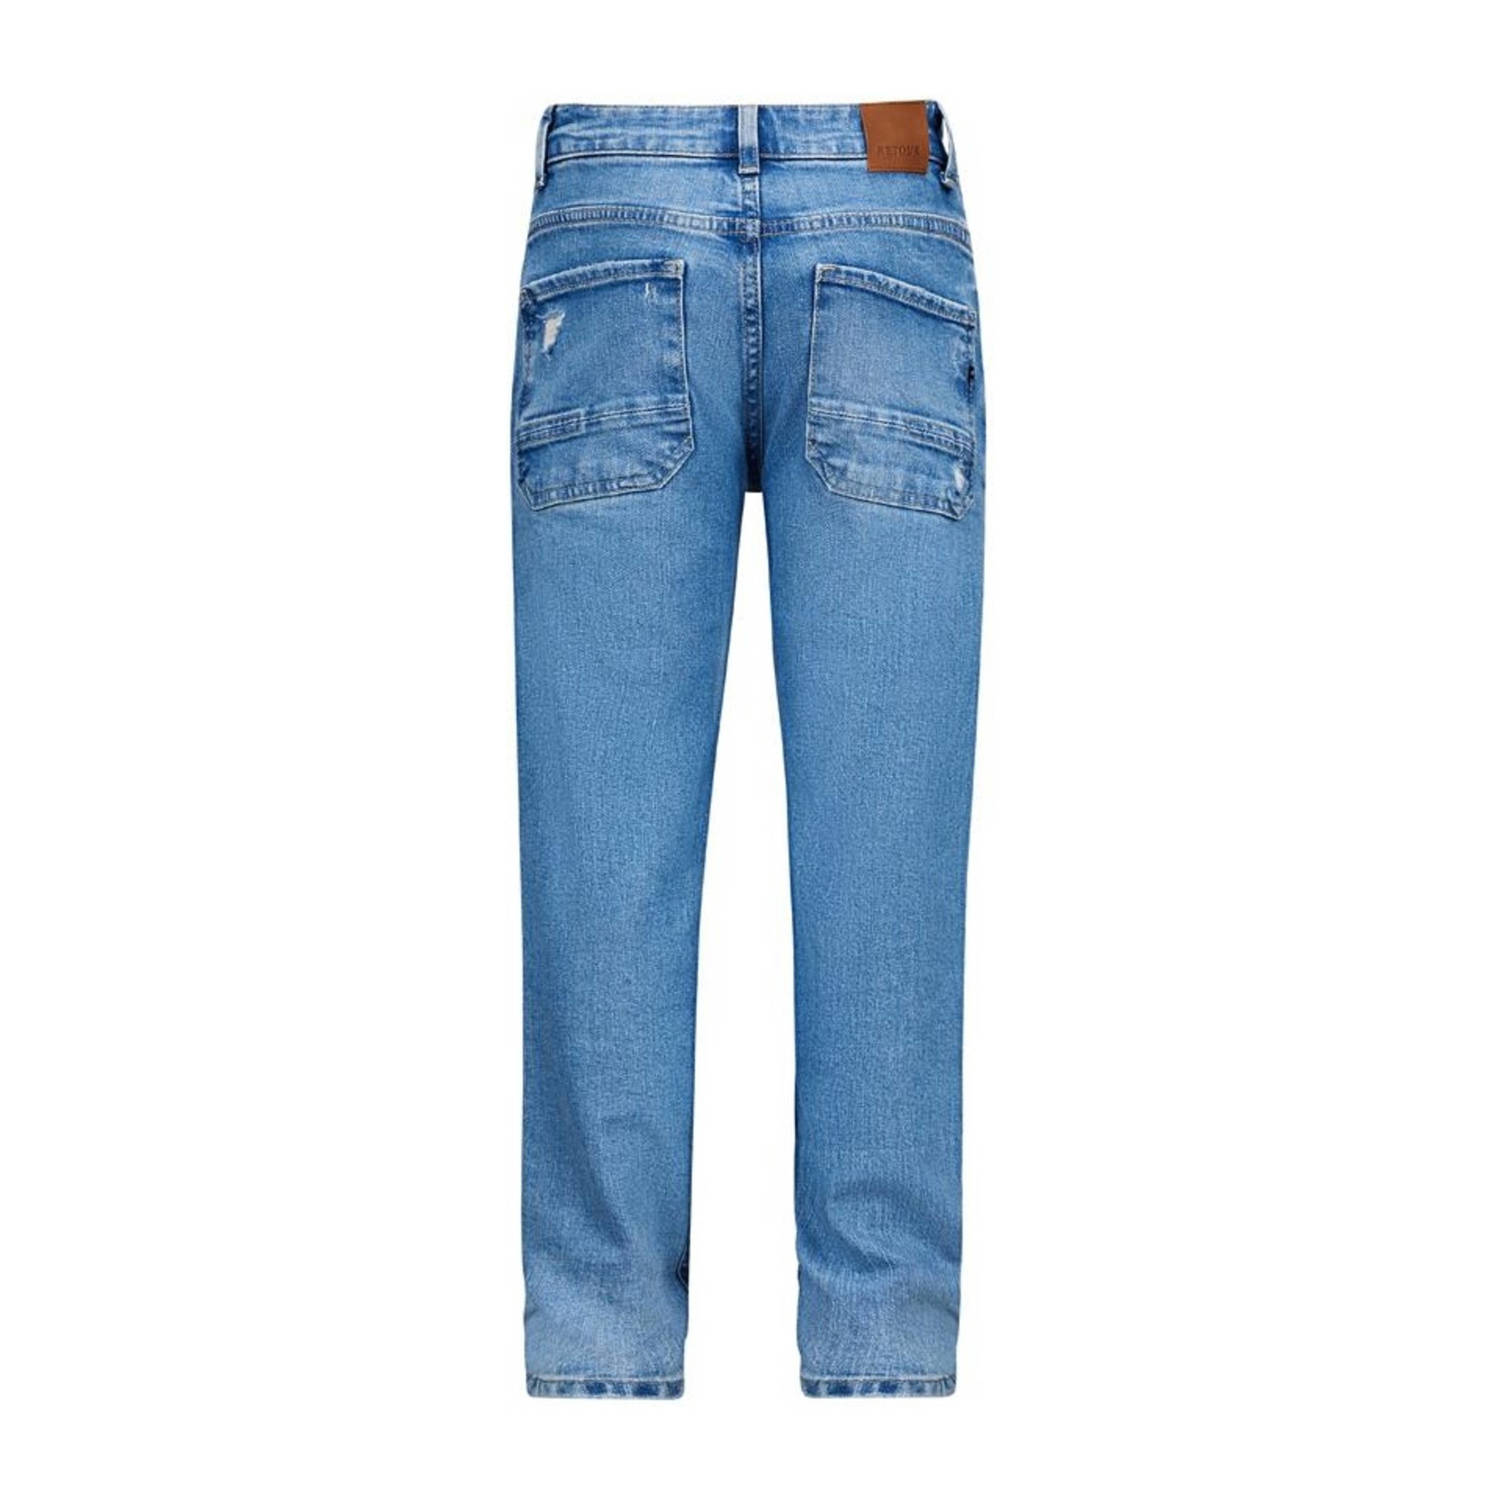 Retour Jeans loose fit jeans Landon Vintage light blue denim